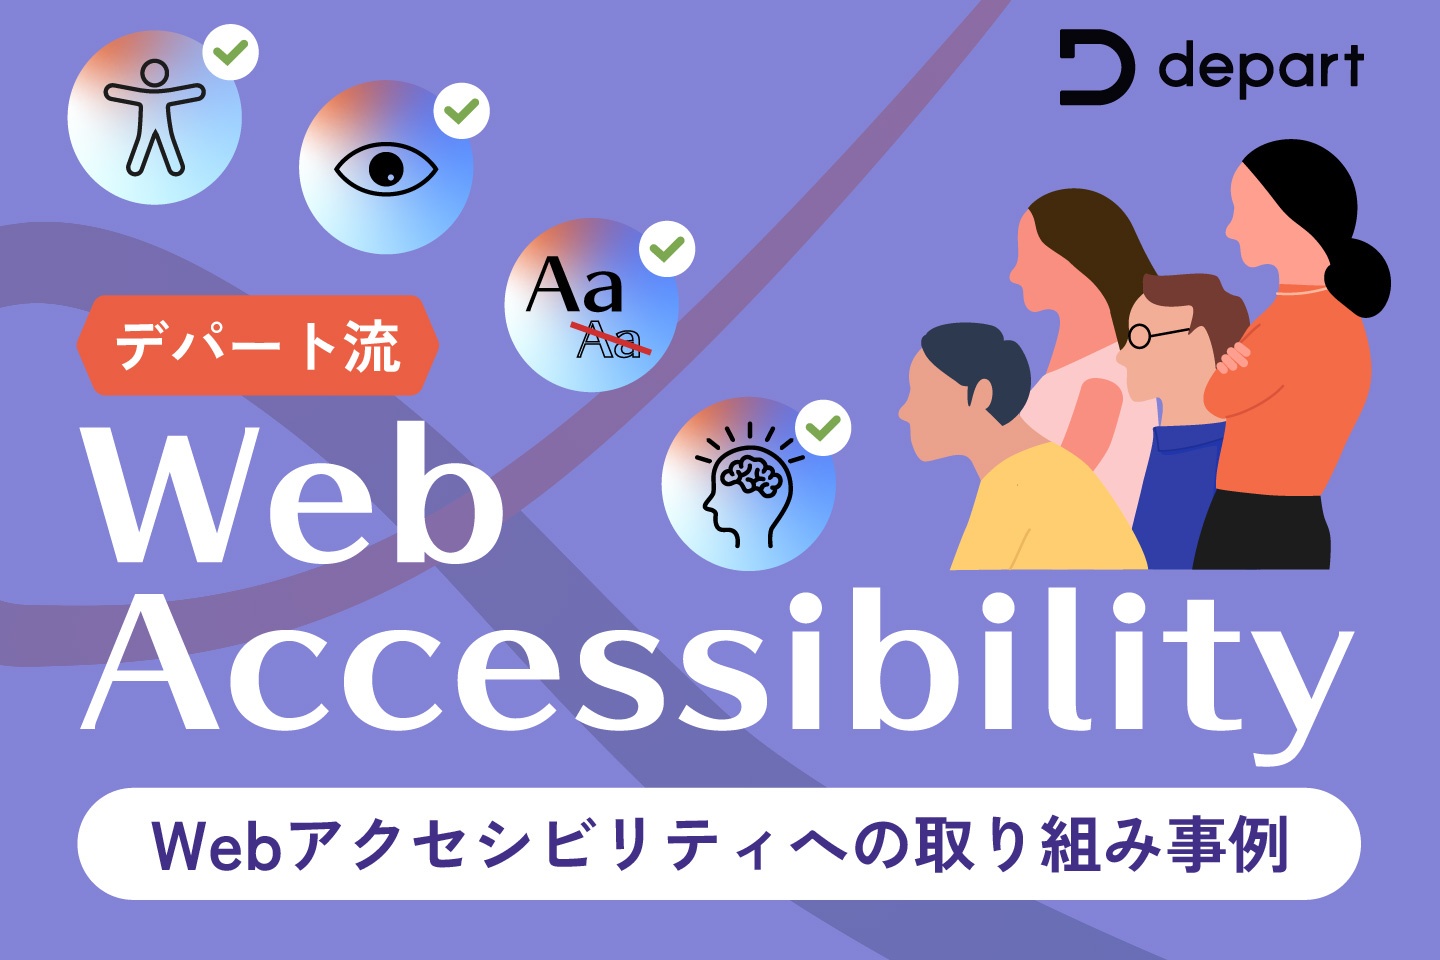 【デパート流】Web制作会社におけるWebアクセシビリティへの取り組み事例